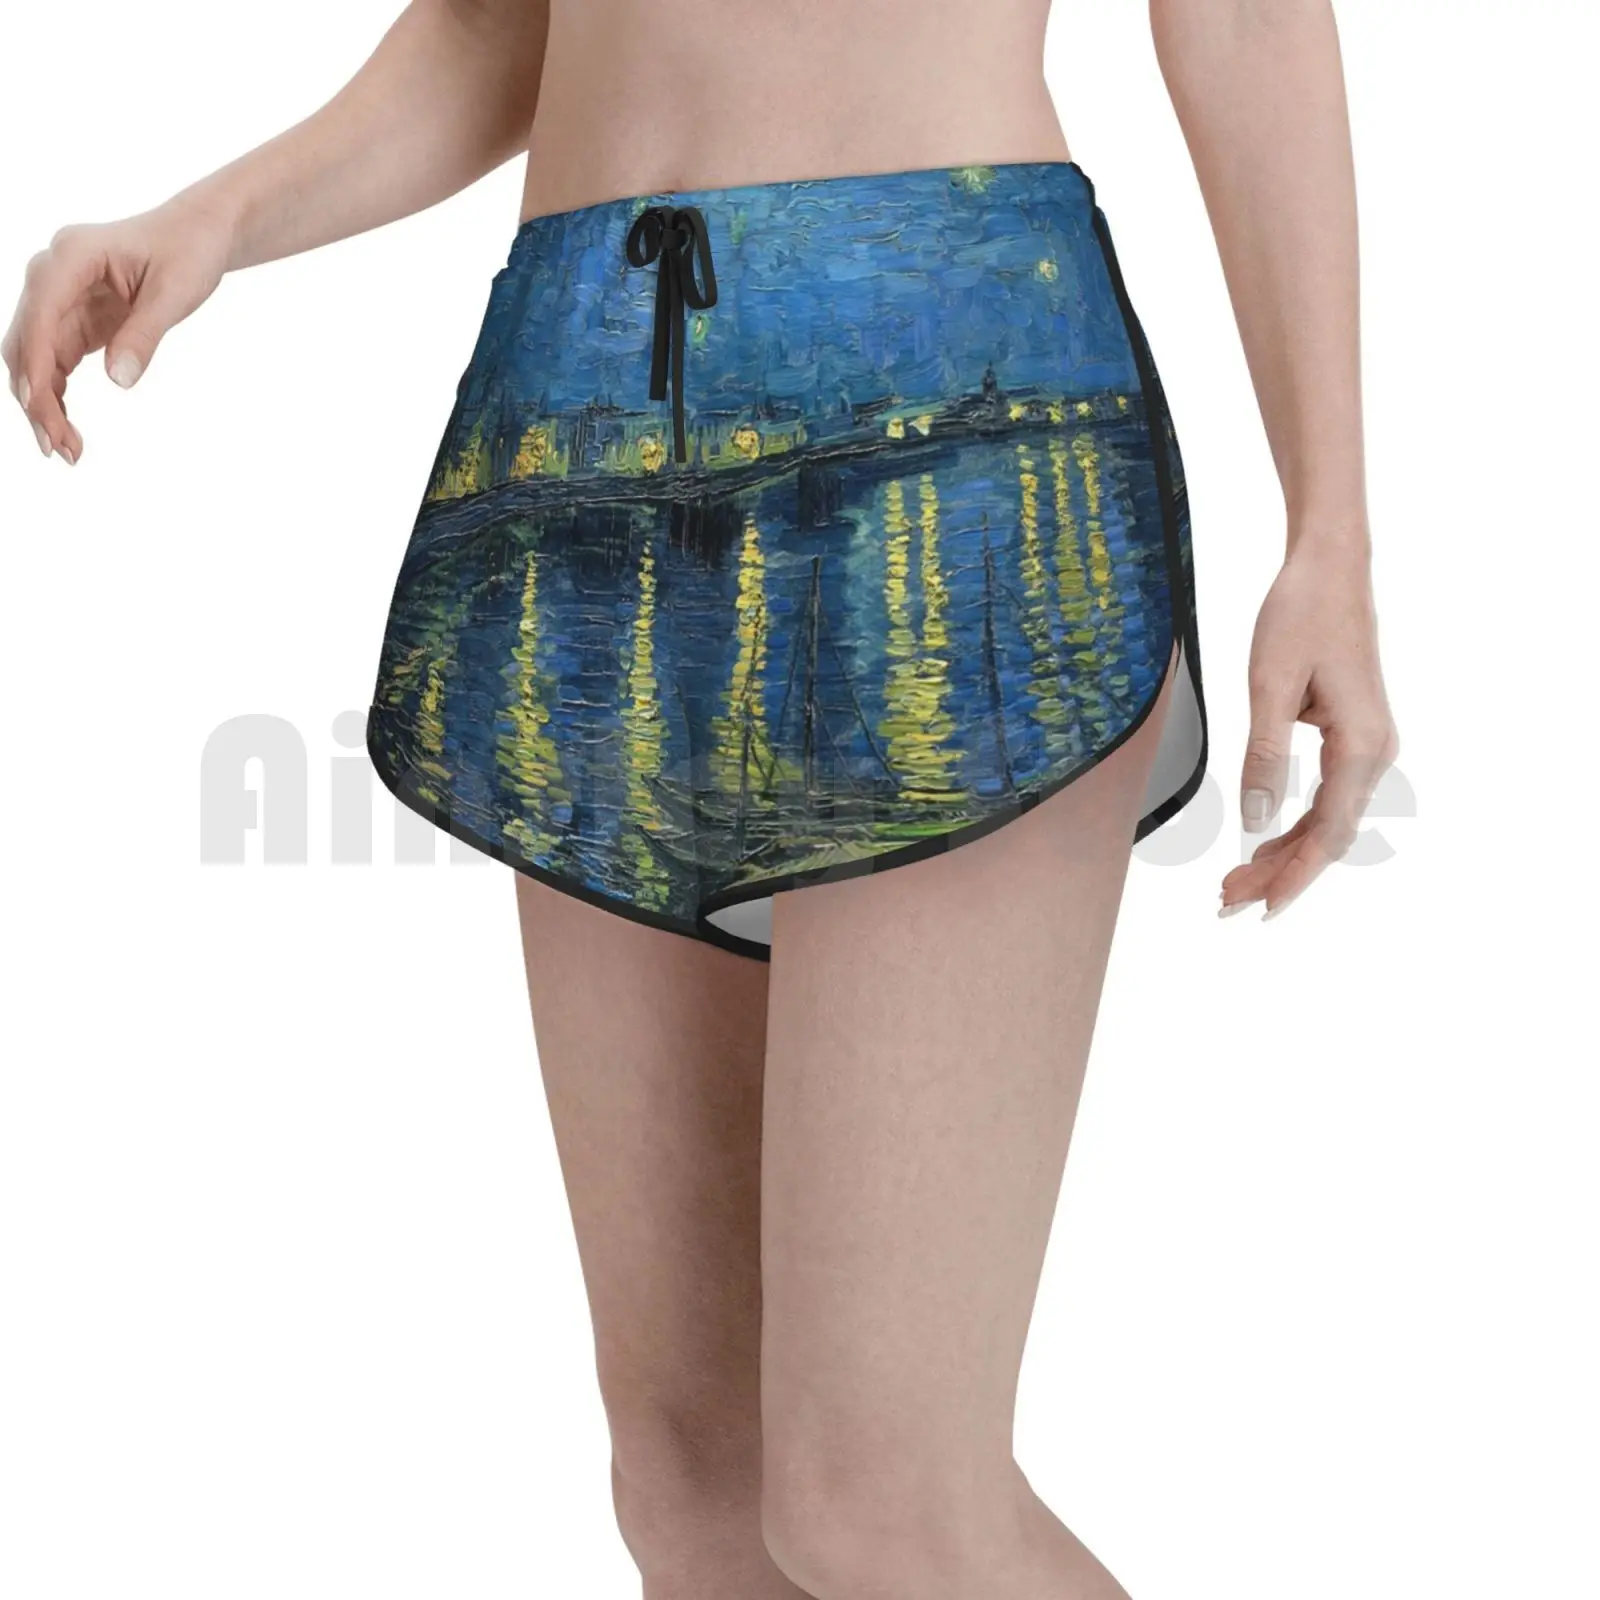 

Звездная ночь (1888) Ван Гога Плавание шорты Для женщин Пляжные шорты Ван Гог ночь мирного художественный классика